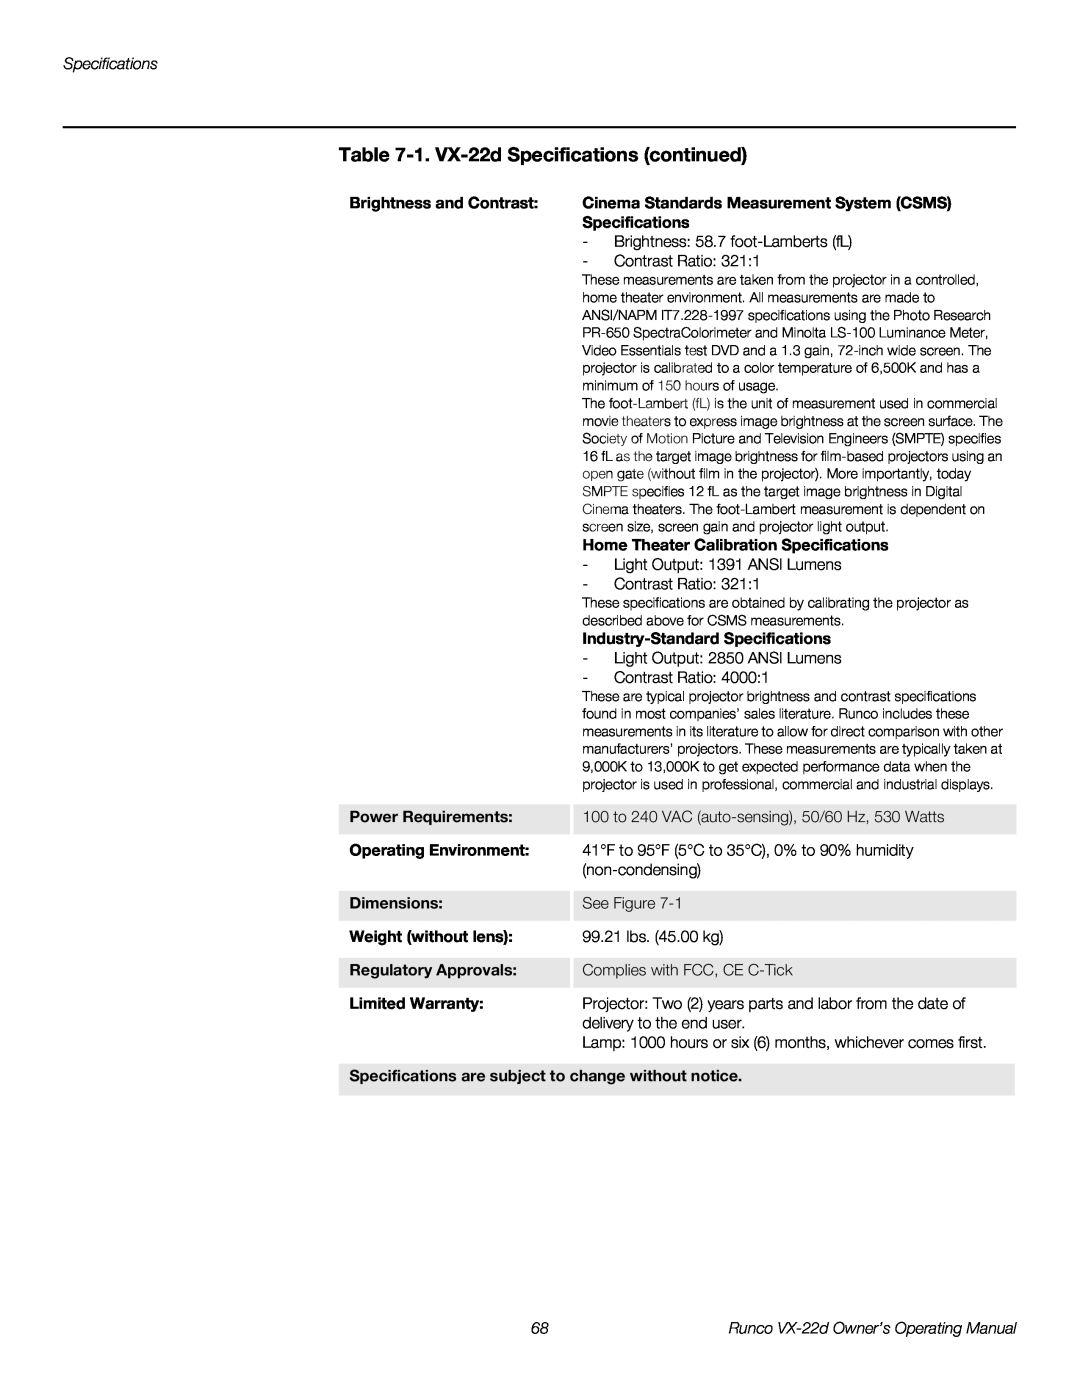 Runco VX-22D manual 1. VX-22d Specifications continued 